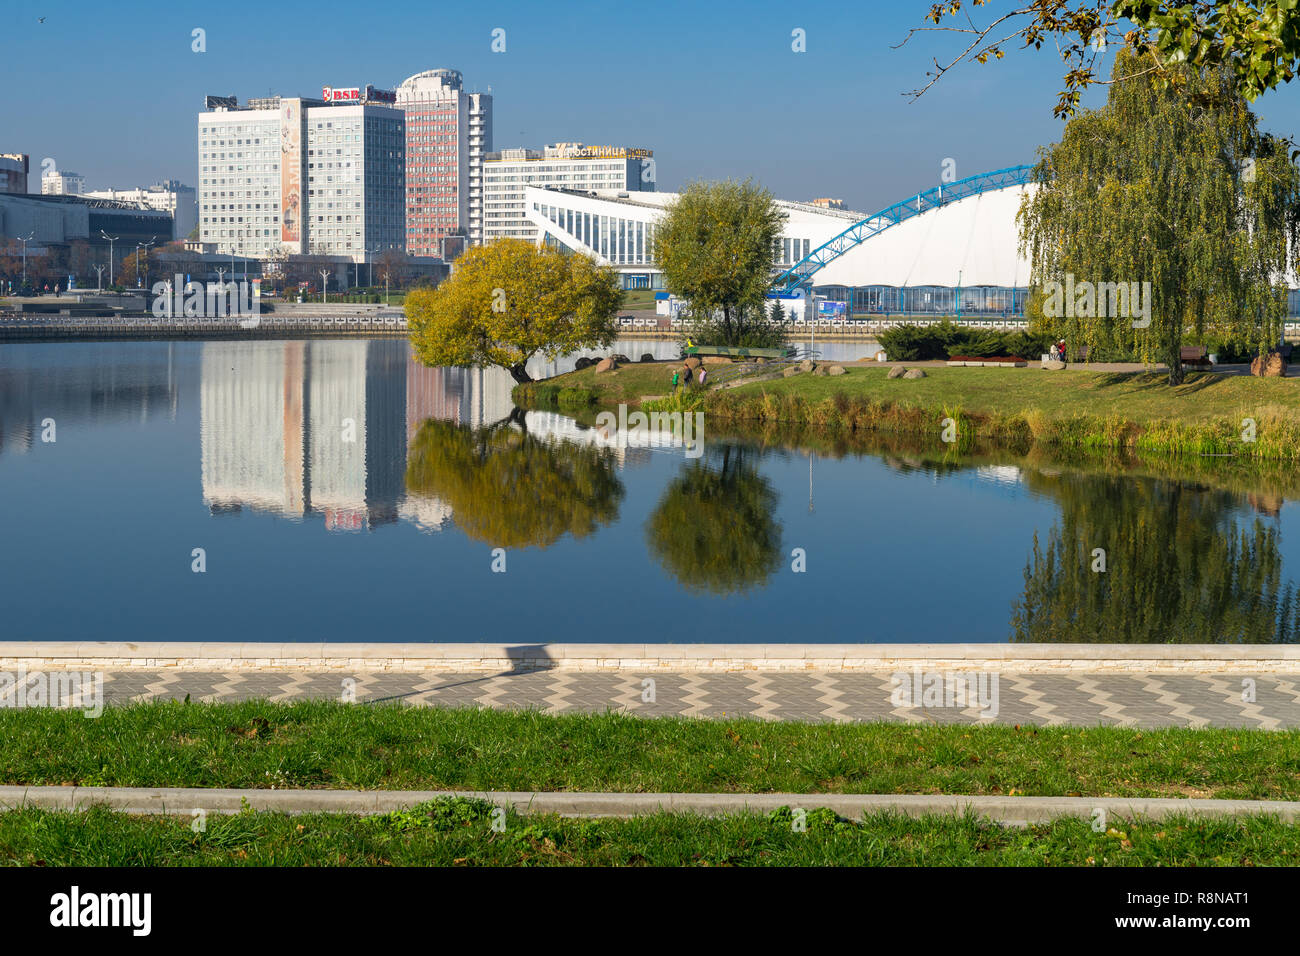 Ansicht mit Wasser Reflexionen in swislotsch Fluss - saisonale Eisbahn in der Traglufthalle, Minsk Sport Palast und mehrstöckige Häuser Stockfoto